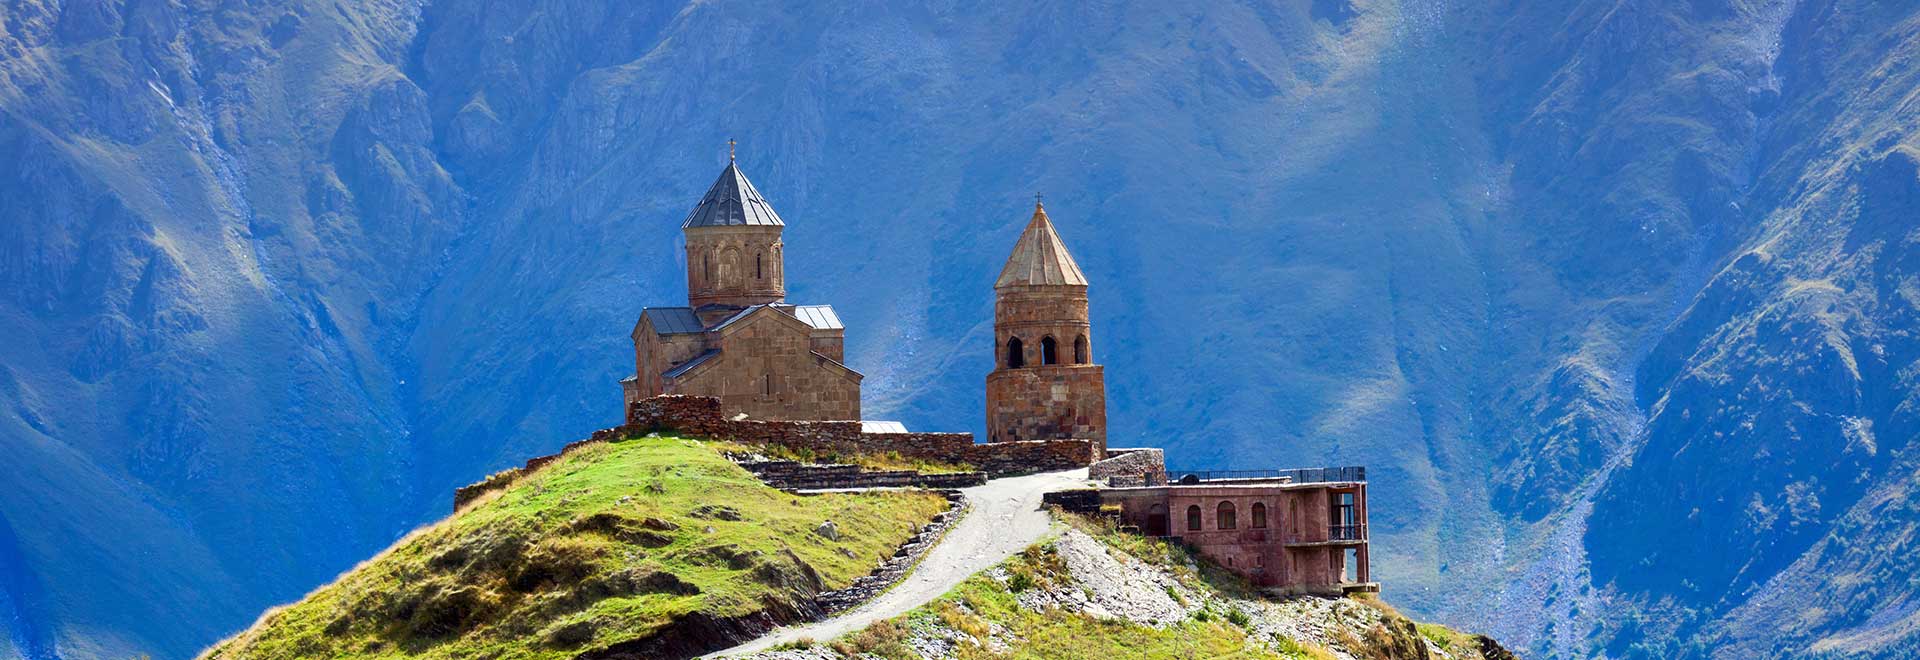 Europe Georgia Armenia Journey Caucasus